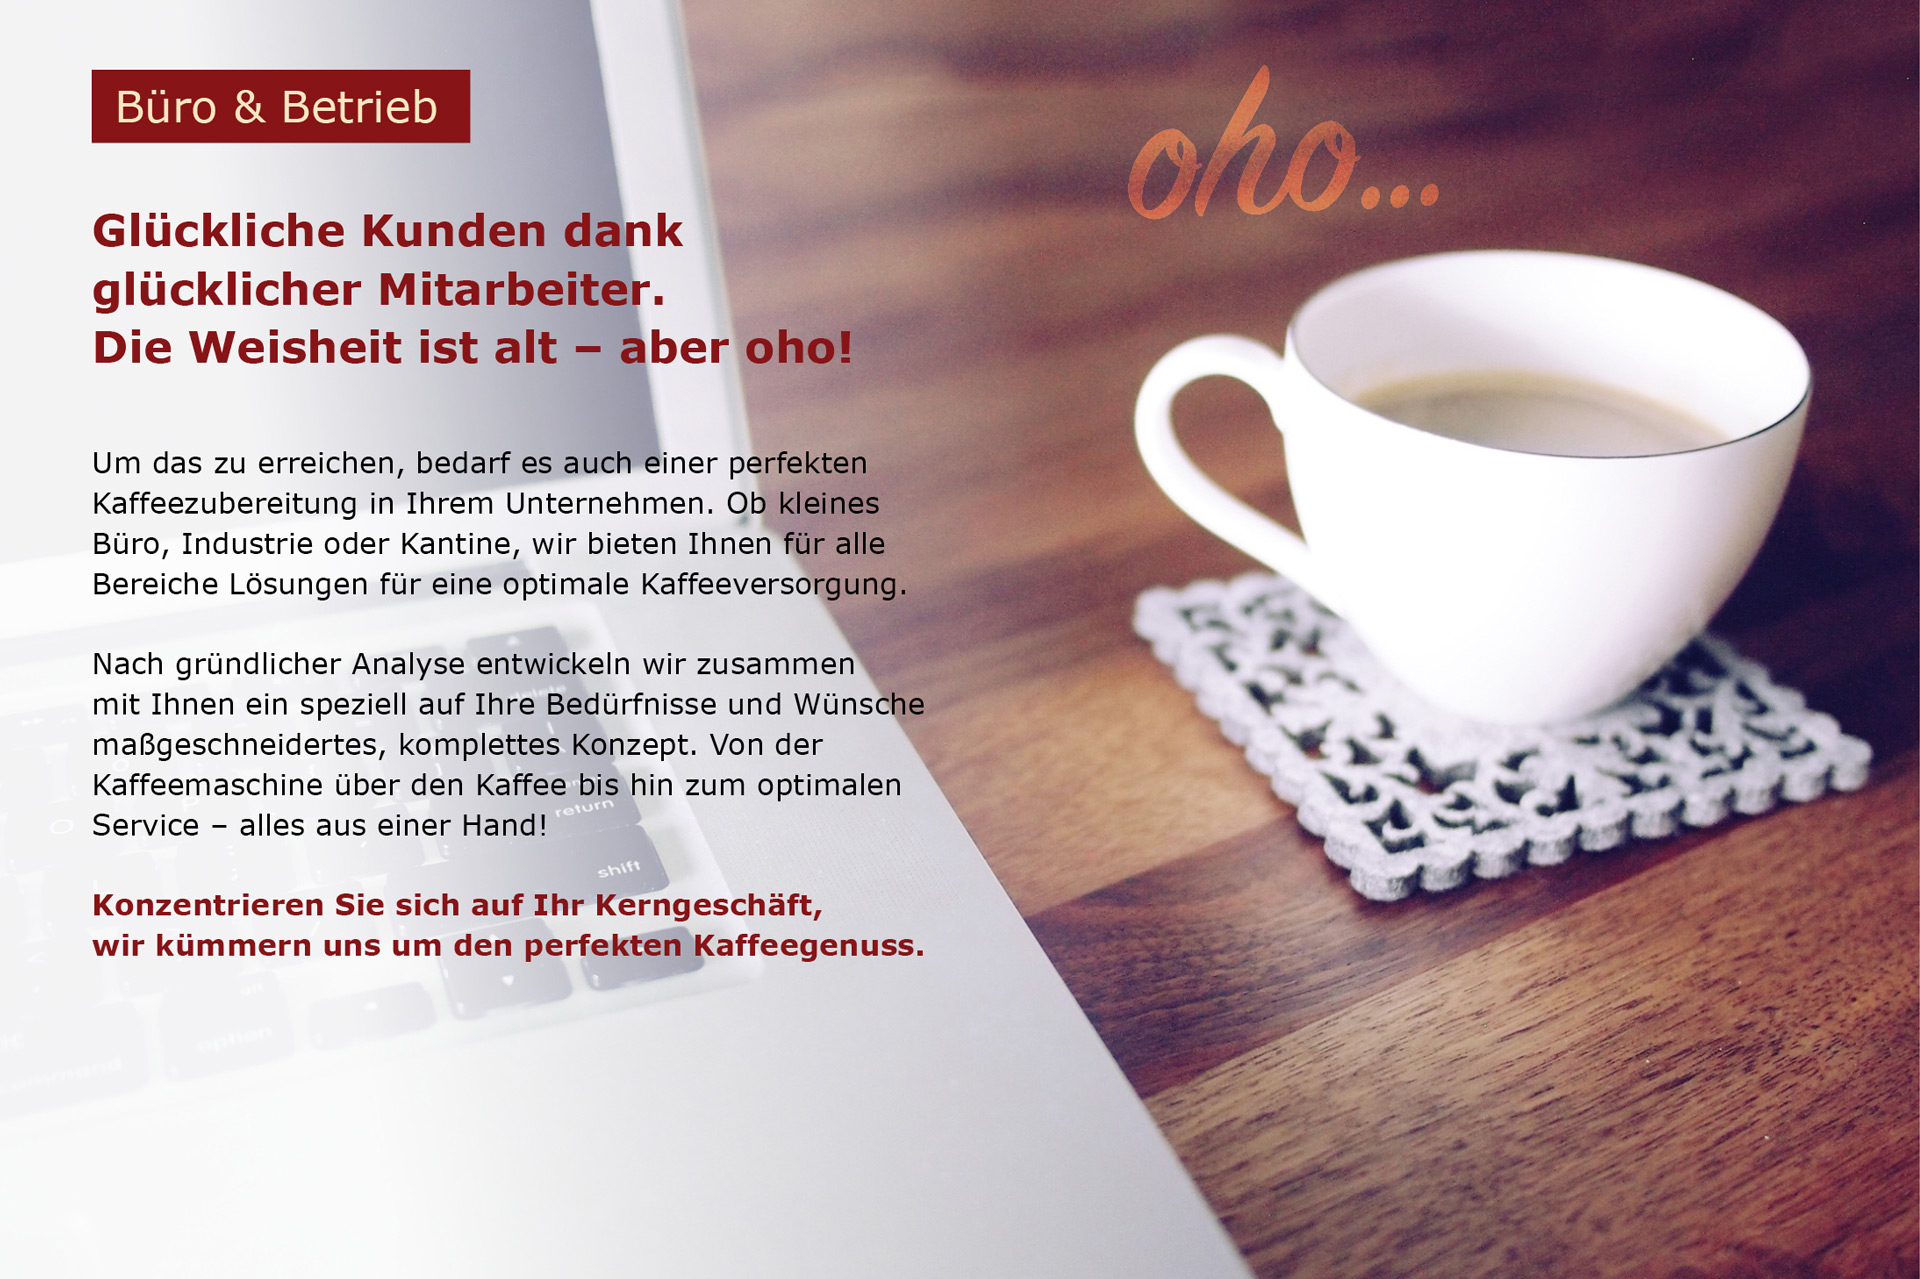 Ich such eine Kaffeemaschine für mein Büro oder Betrieb - cafeum GmbH Herbolzheim